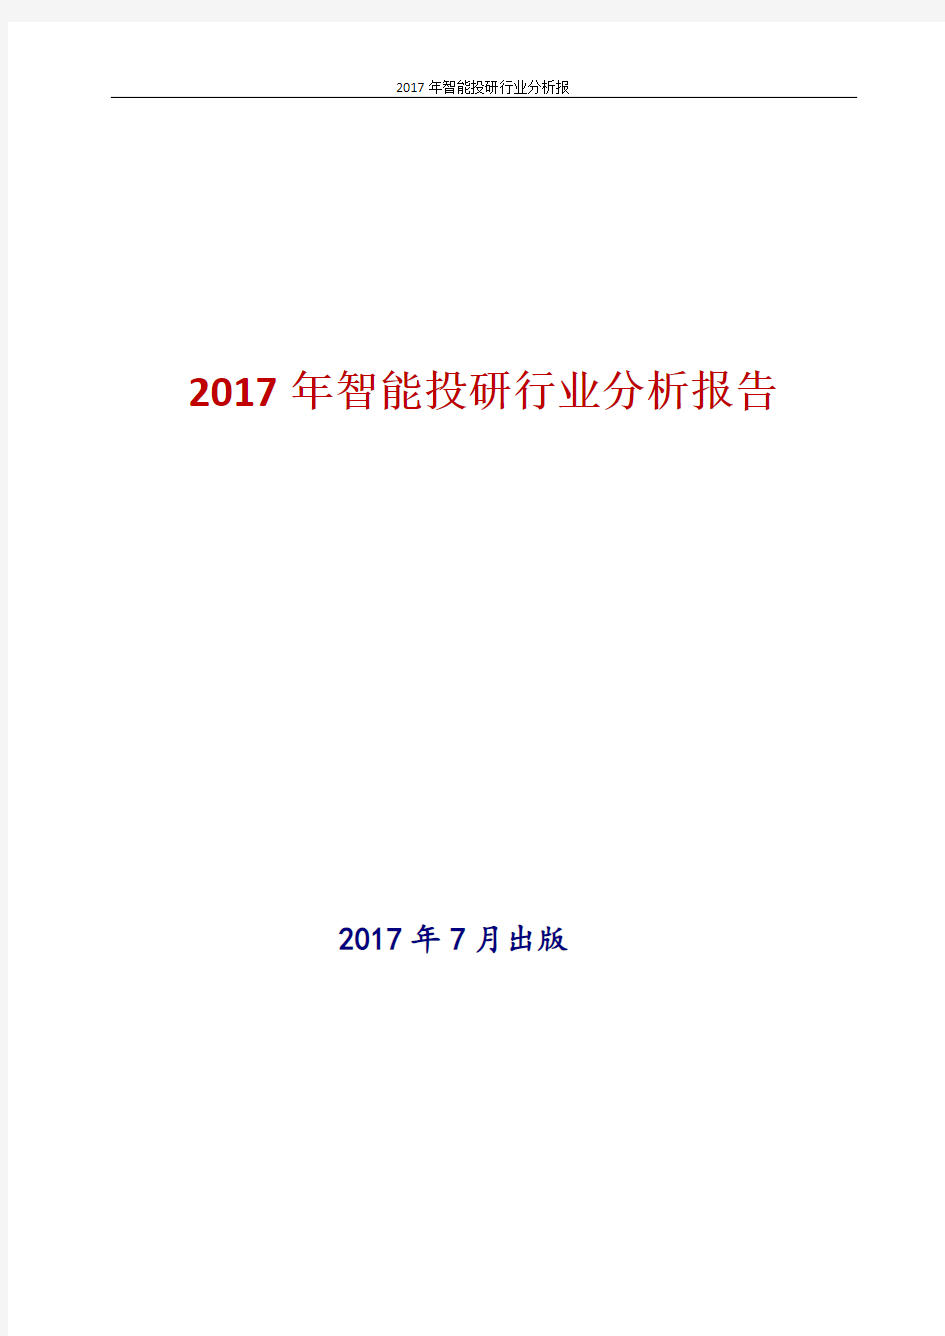 中国智能投研行业分析报告2017年版